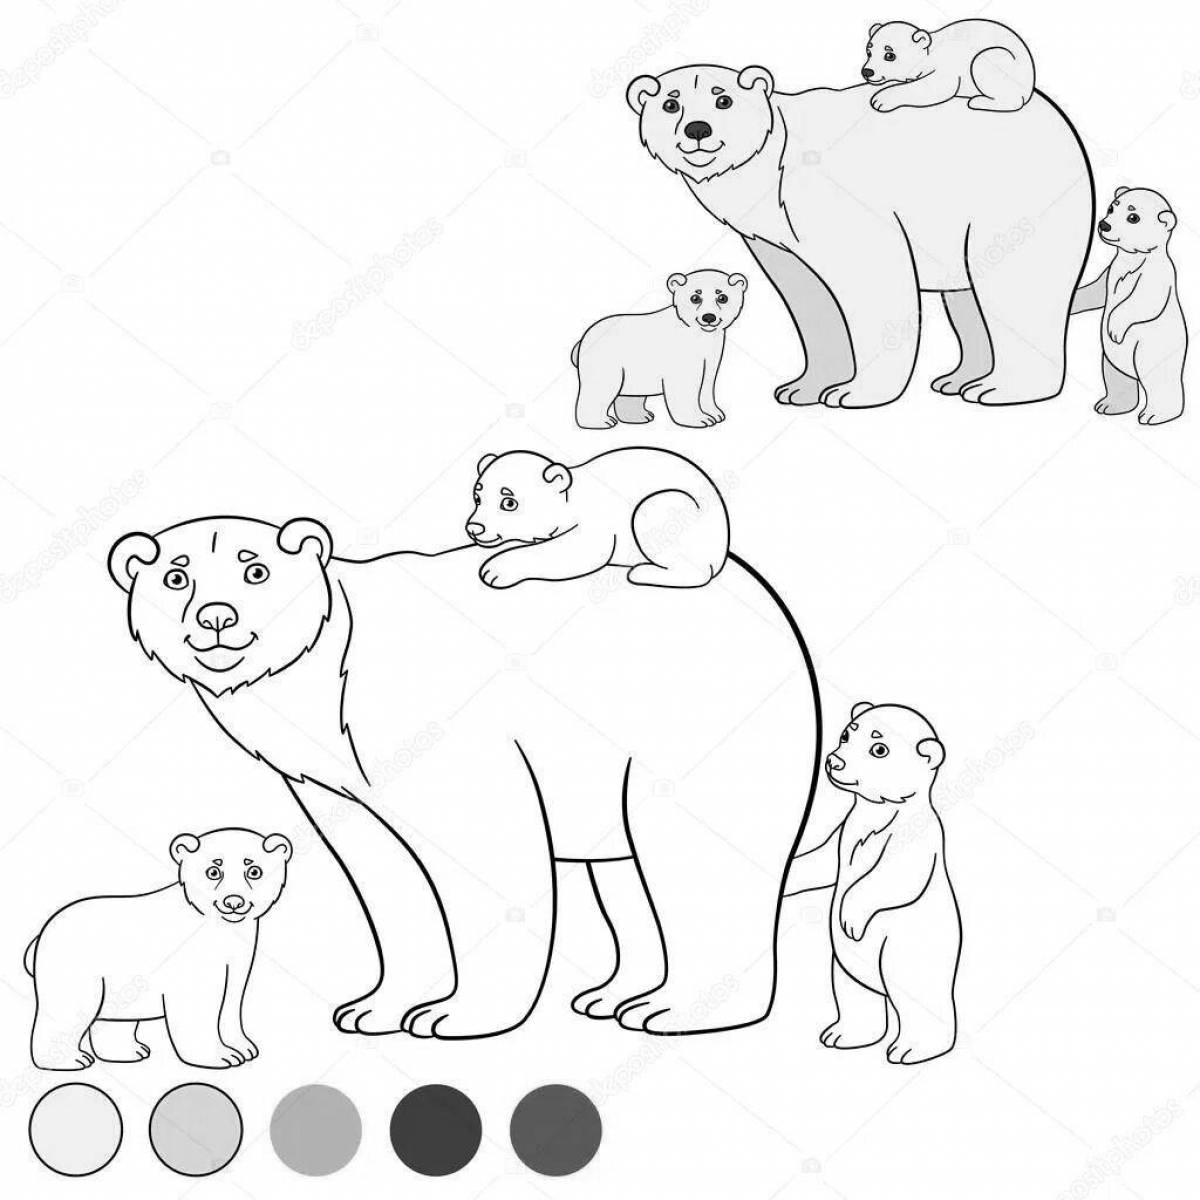 Восхитительная страница раскраски медвежьей семьи